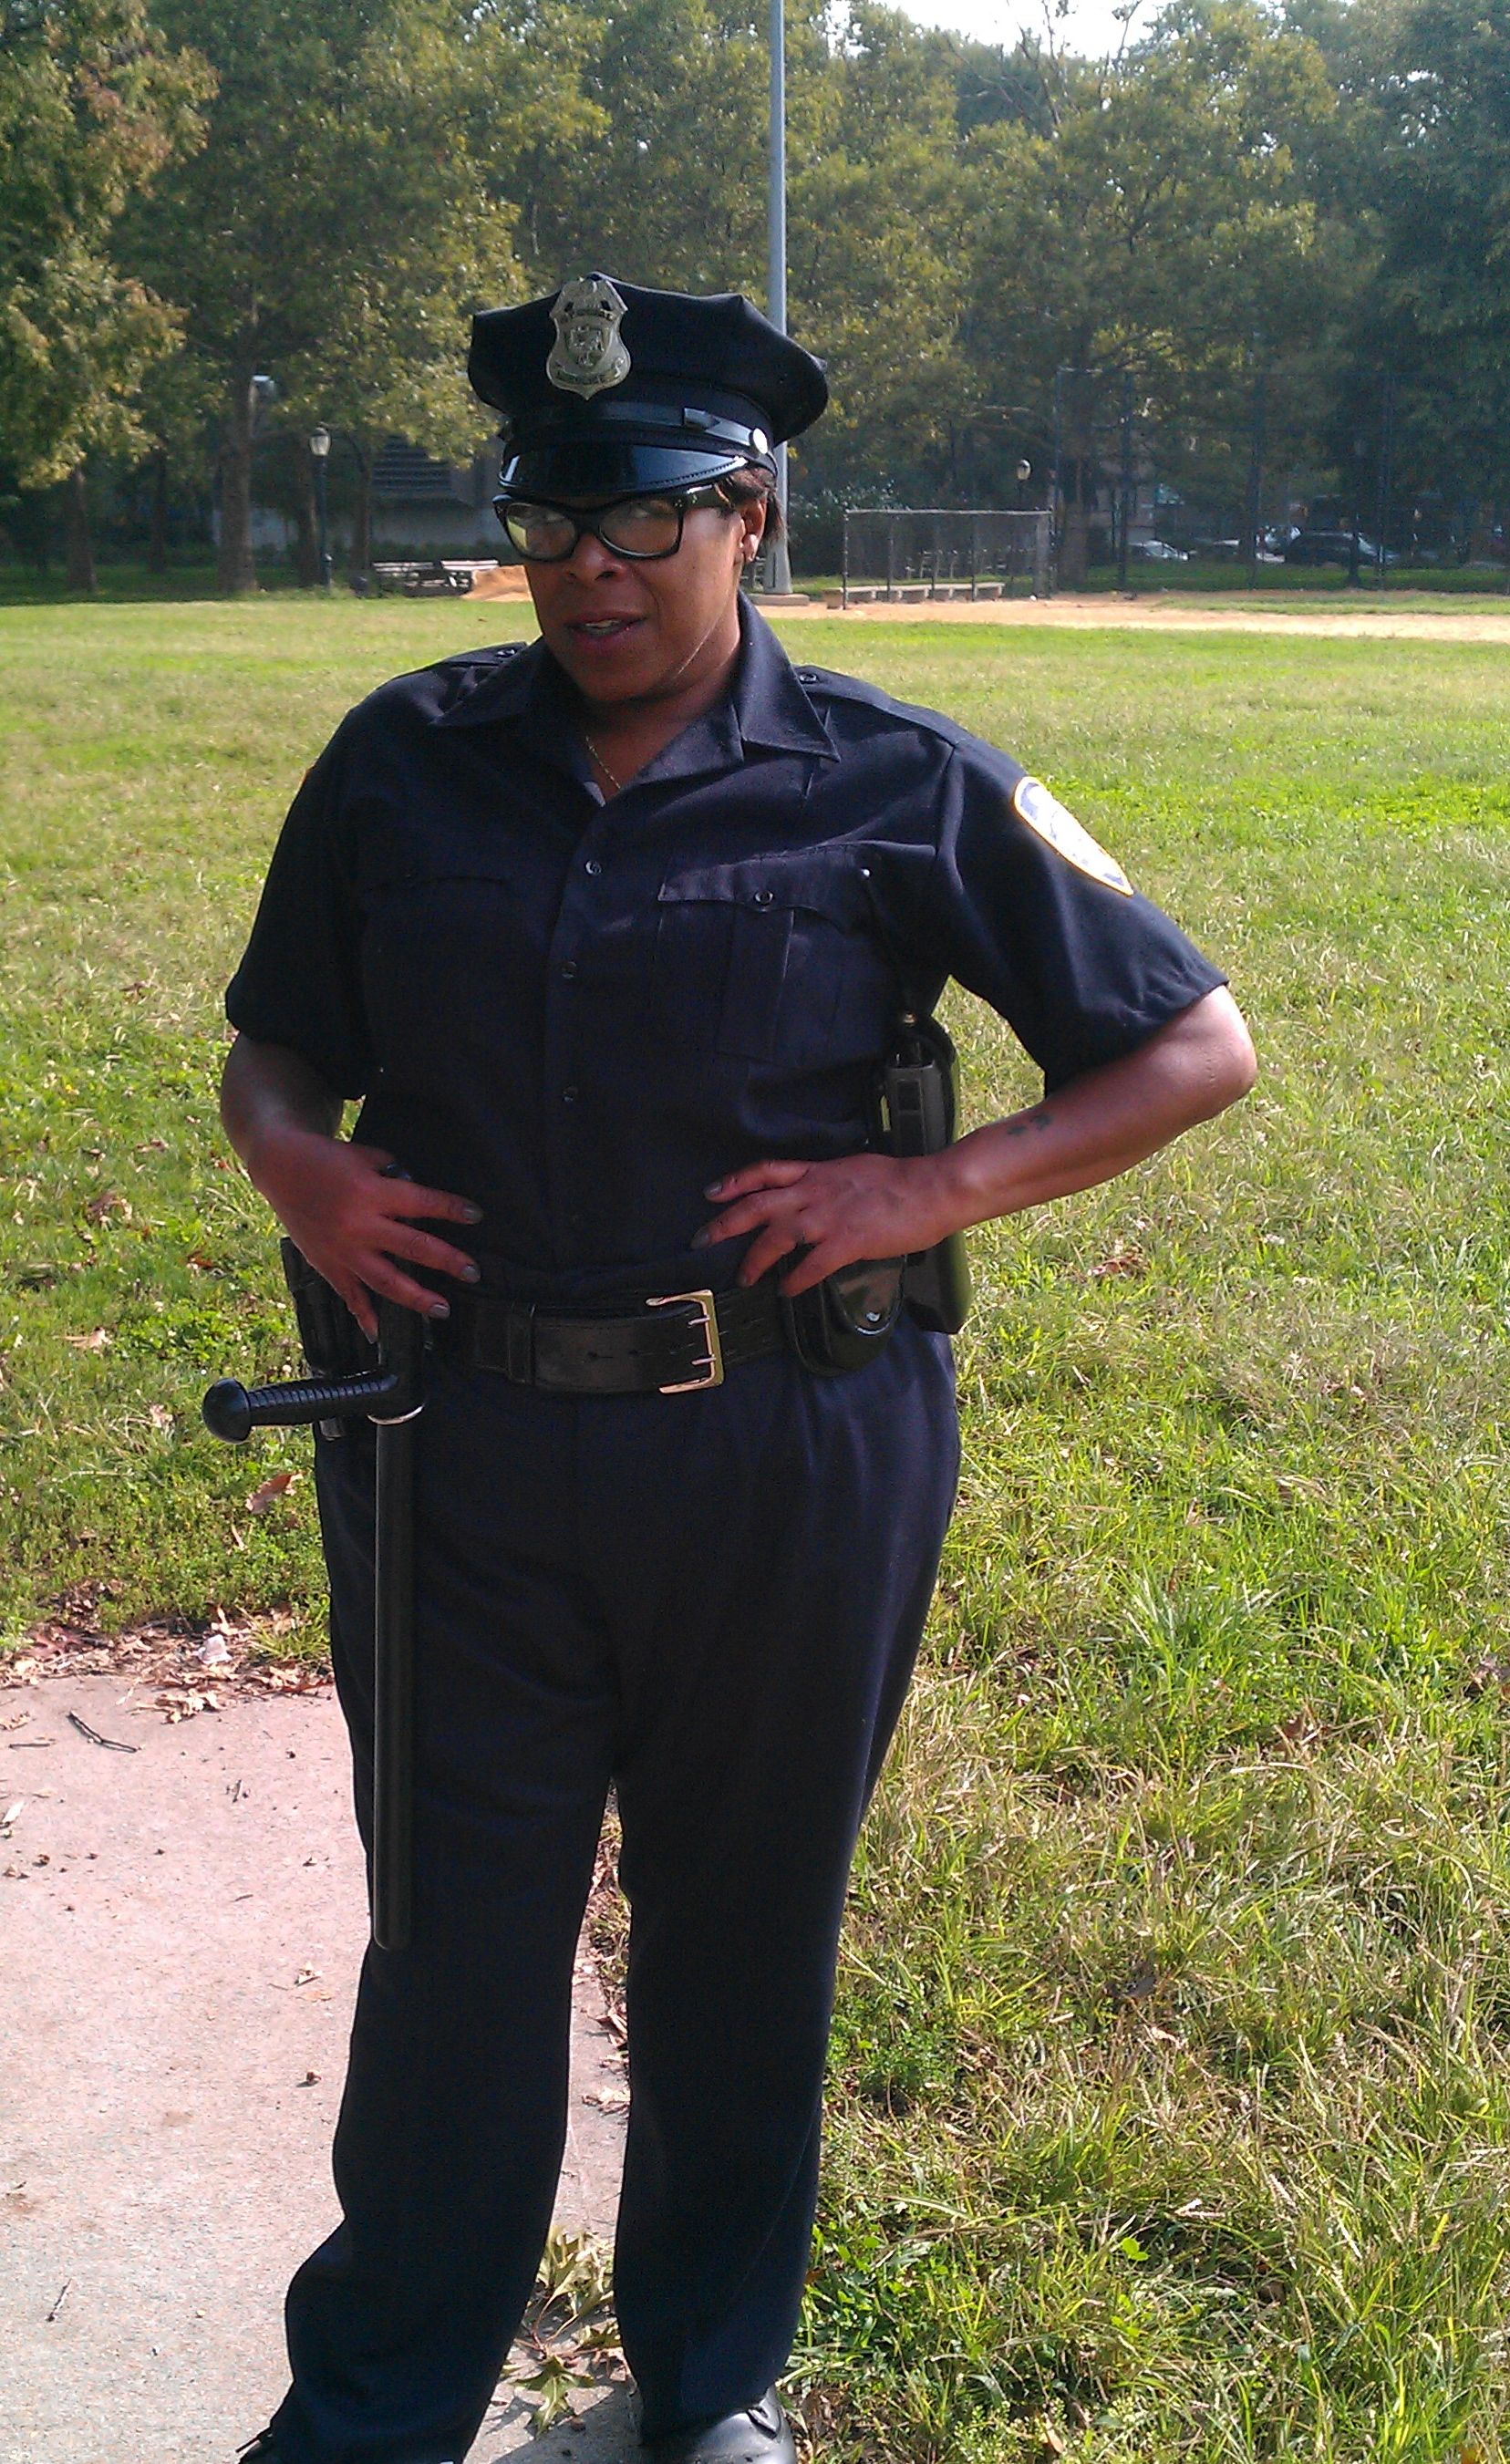 Officer Morrison